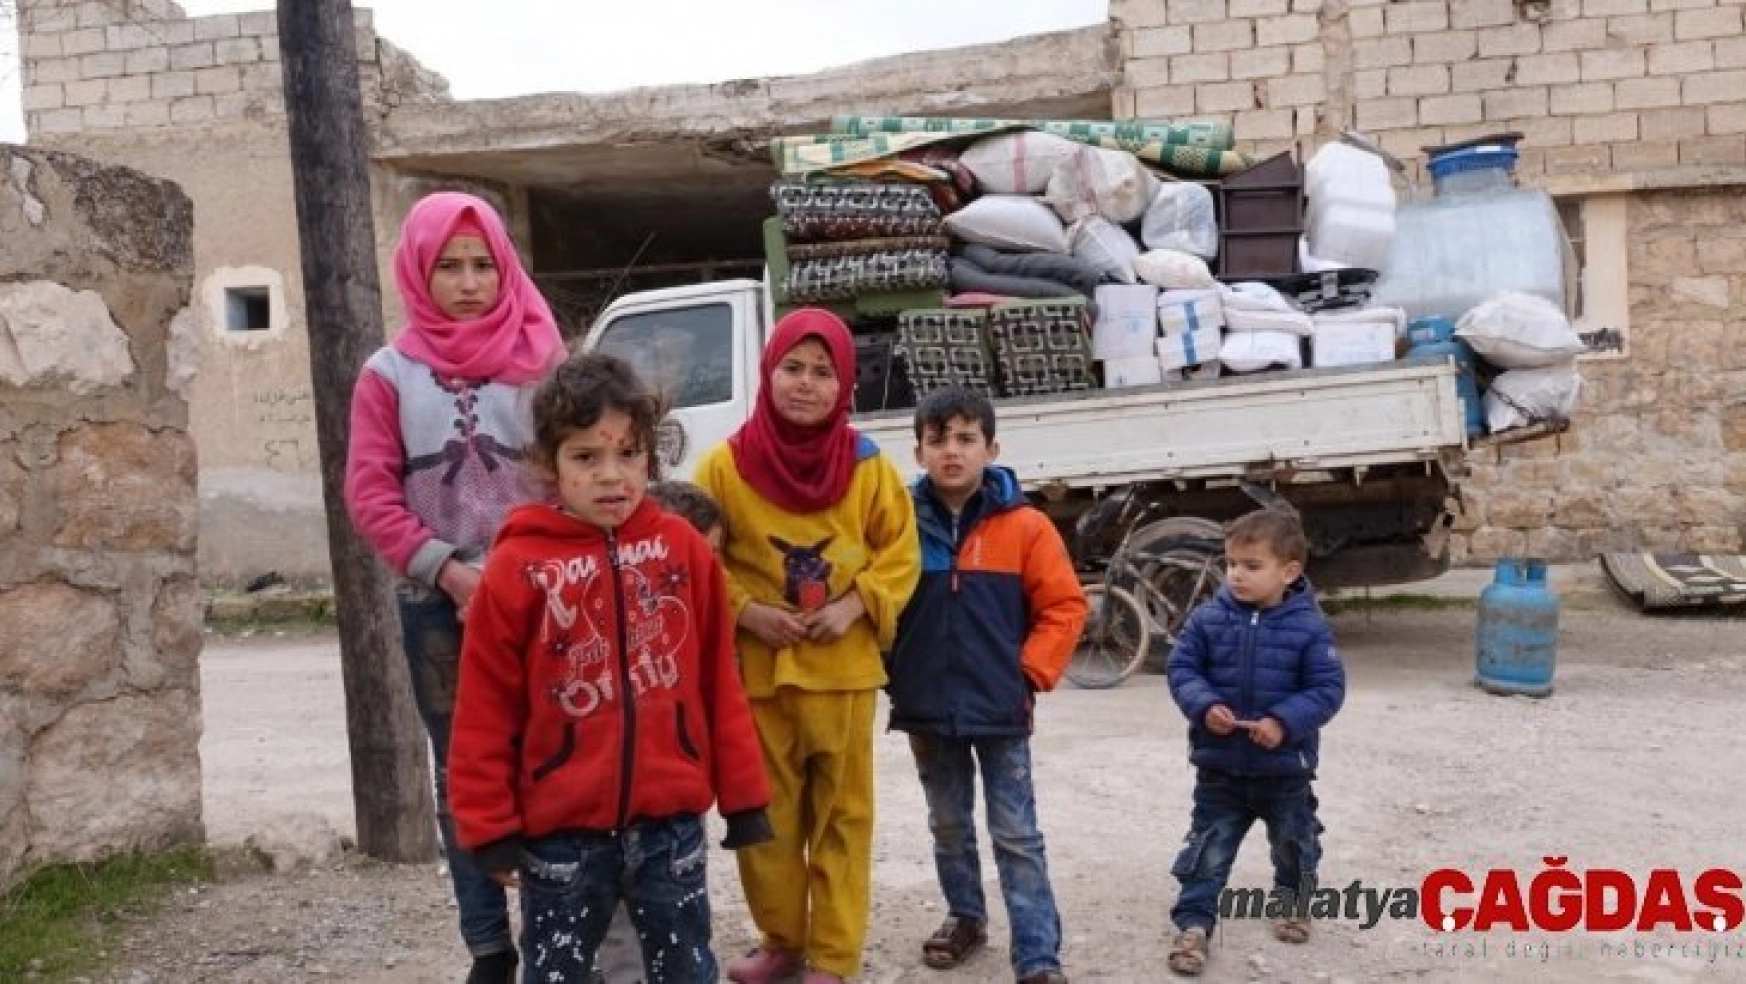 Halep'teki siviller ölümden kaçmaya devam ediyor